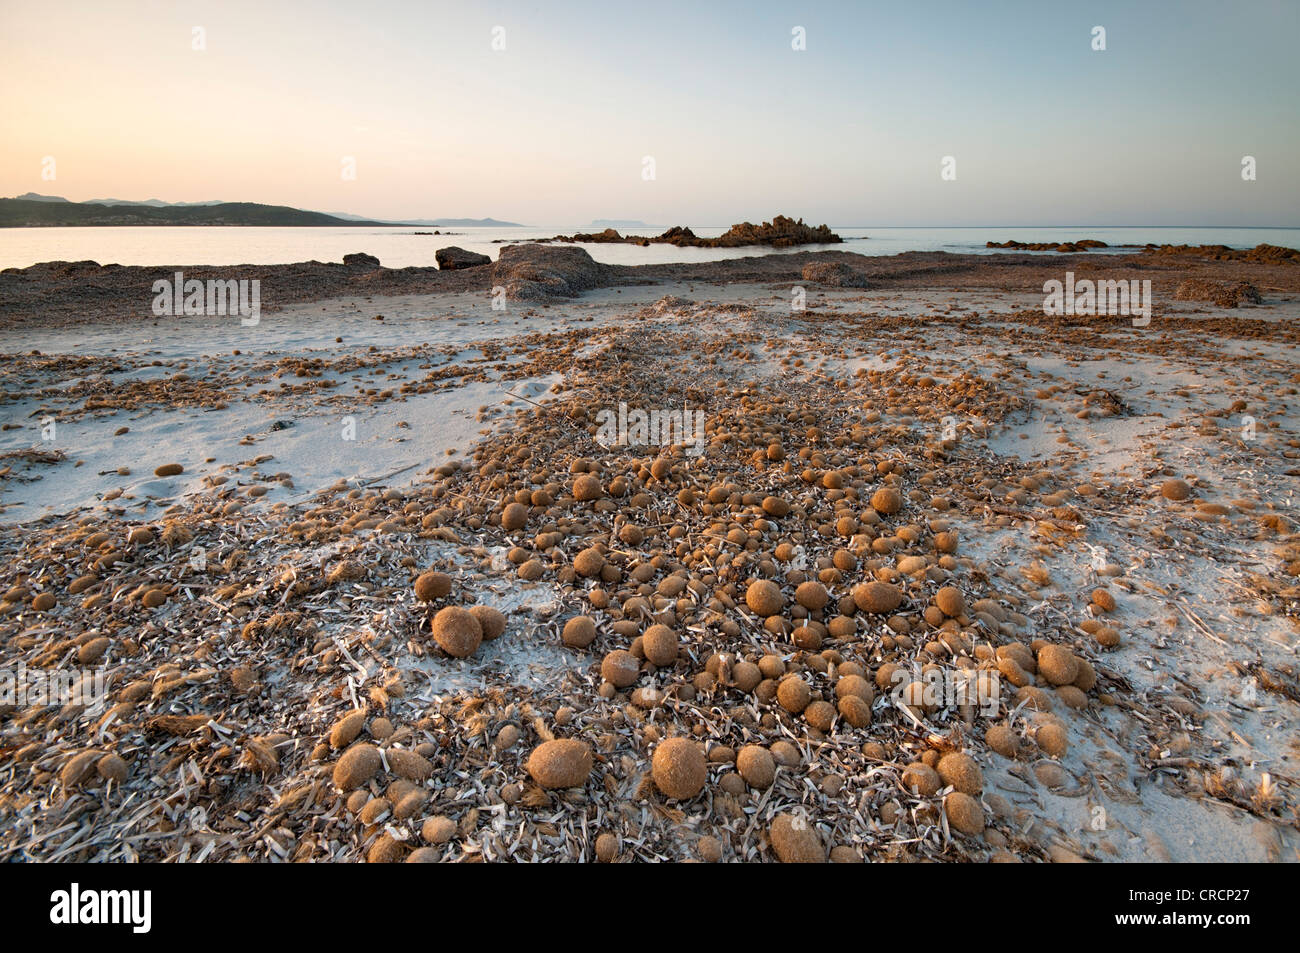 Spiaggia di Capo Comino con sfere di mare, Siniscola, nella costa occidentale della Sardegna, Italia, Europa Foto Stock